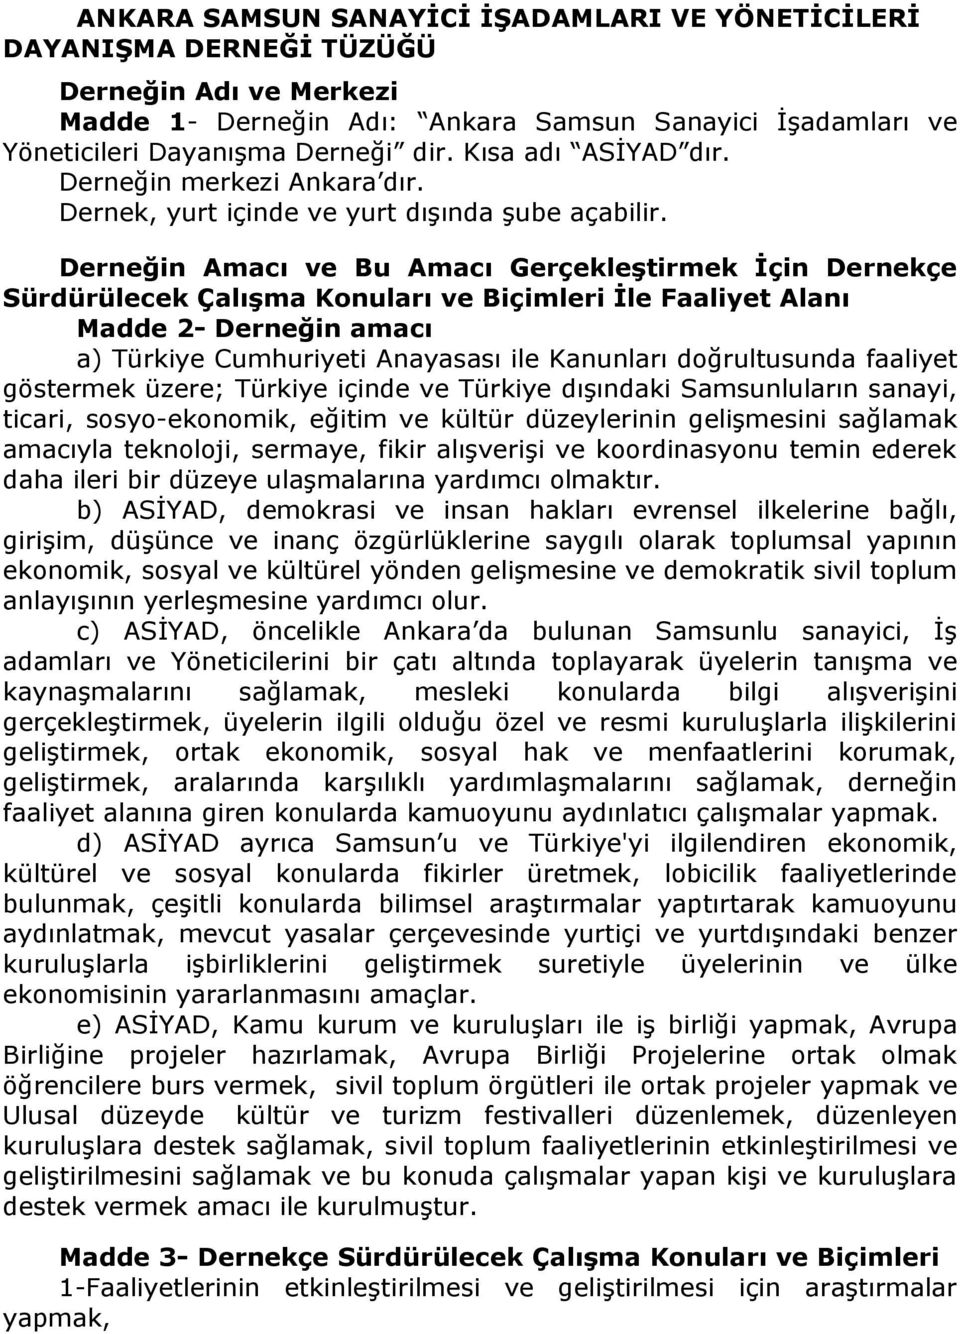 Derneğin Amacı ve Bu Amacı Gerçekleştirmek İçin Dernekçe Sürdürülecek Çalışma Konuları ve Biçimleri İle Faaliyet Alanı Madde 2- Derneğin amacı a) Türkiye Cumhuriyeti Anayasası ile Kanunları